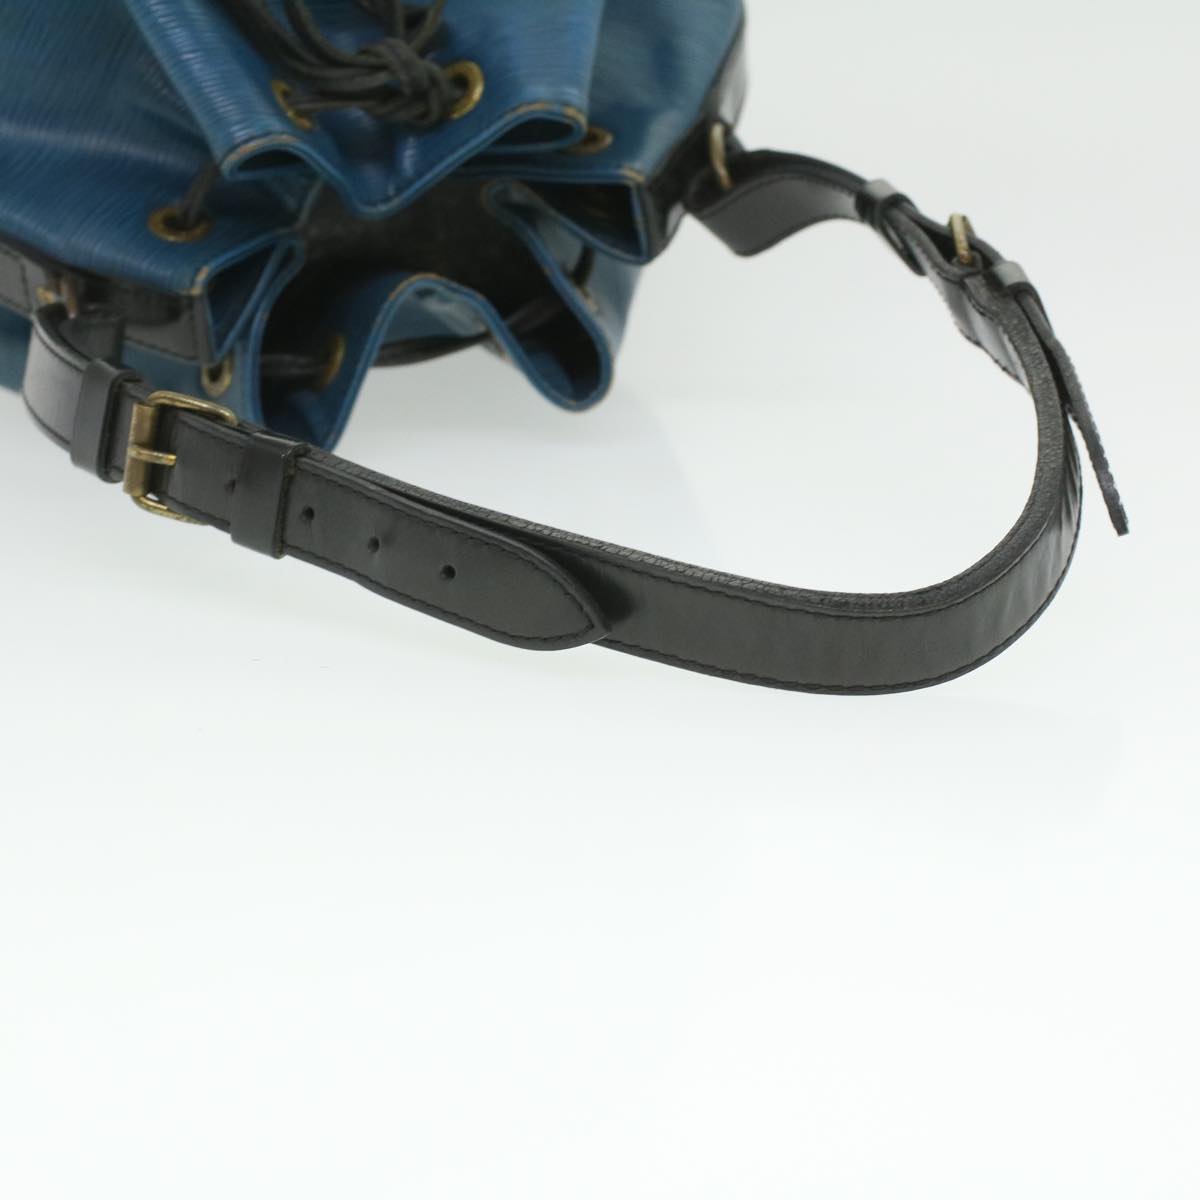 LOUIS VUITTON Epi Petit Noe Shoulder Bag Bicolor Black Blue M44152 LV Auth 35382